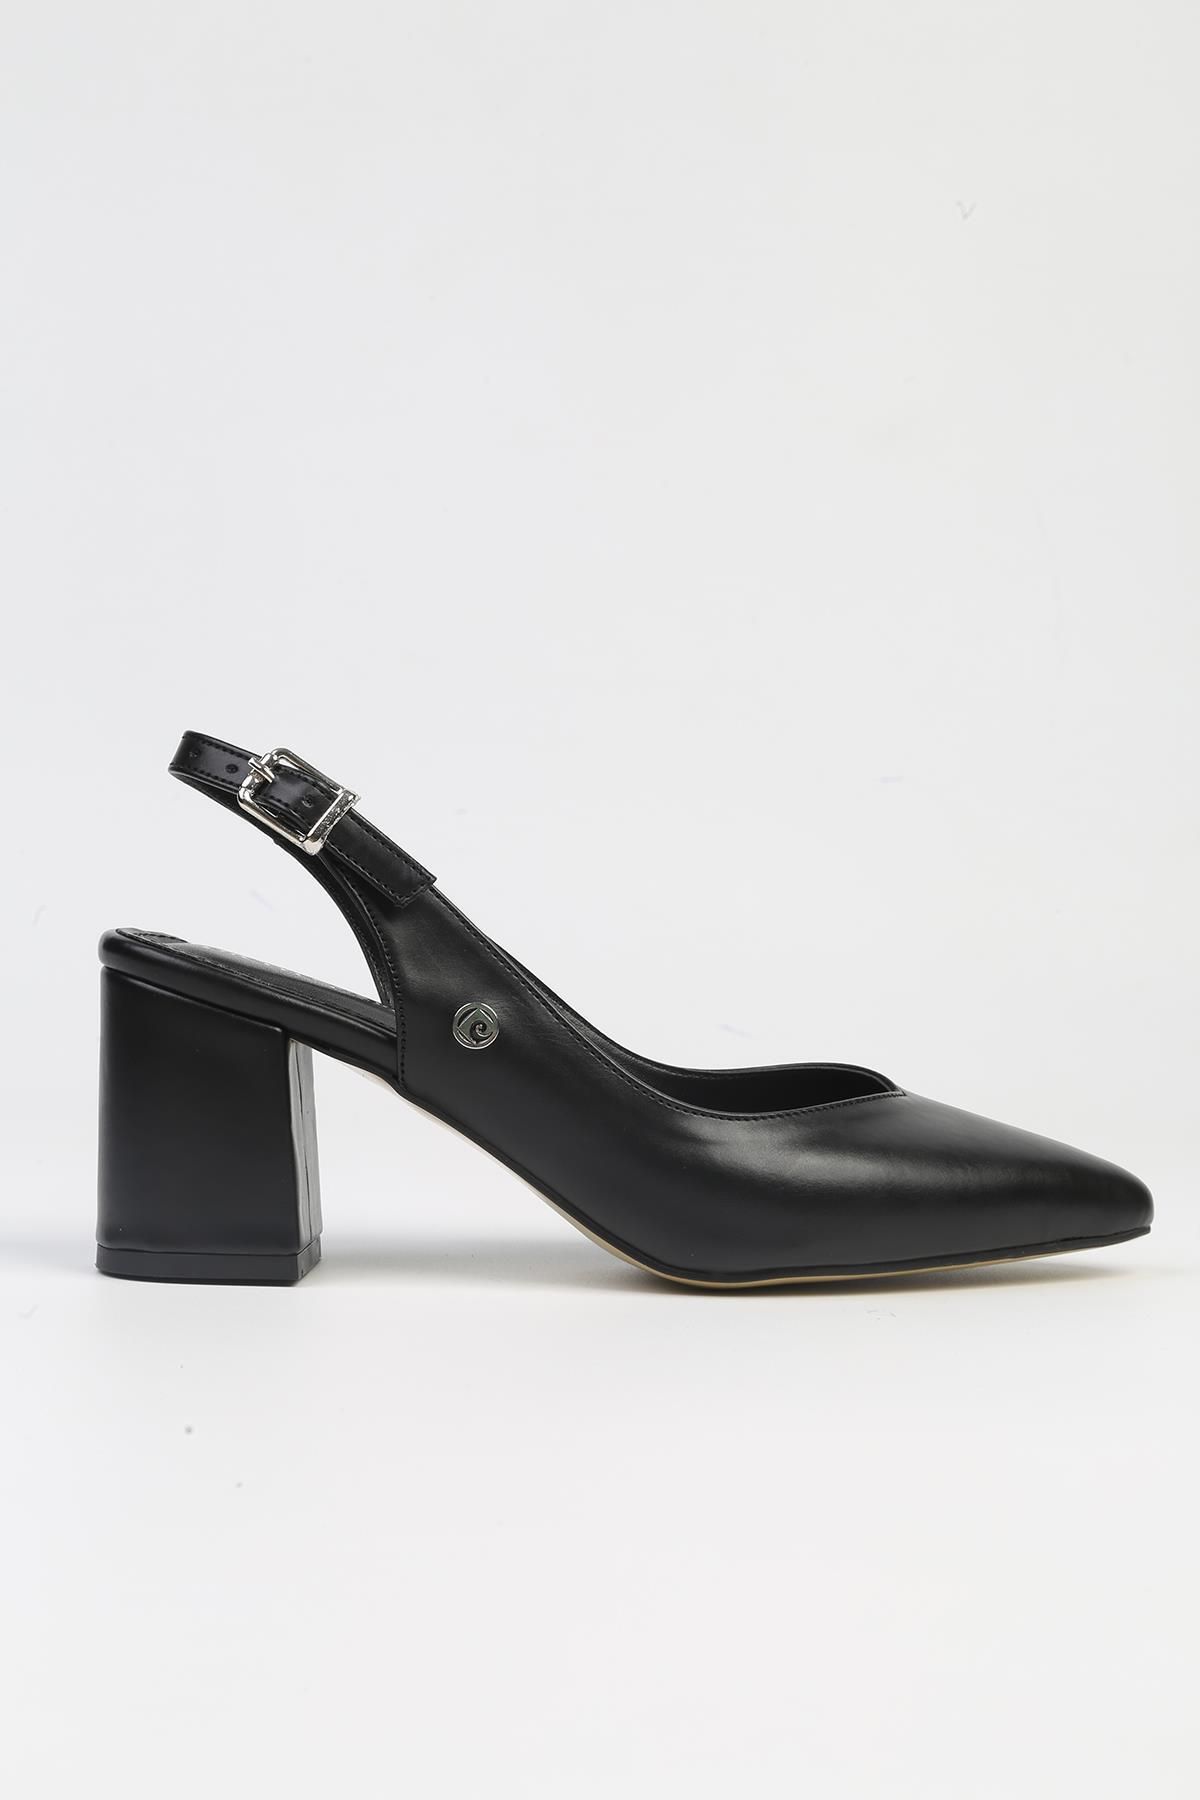 Pierre Cardin ® | PC-53129- 3829 Siyah Cilt-Kadın Topuklu Ayakkabı